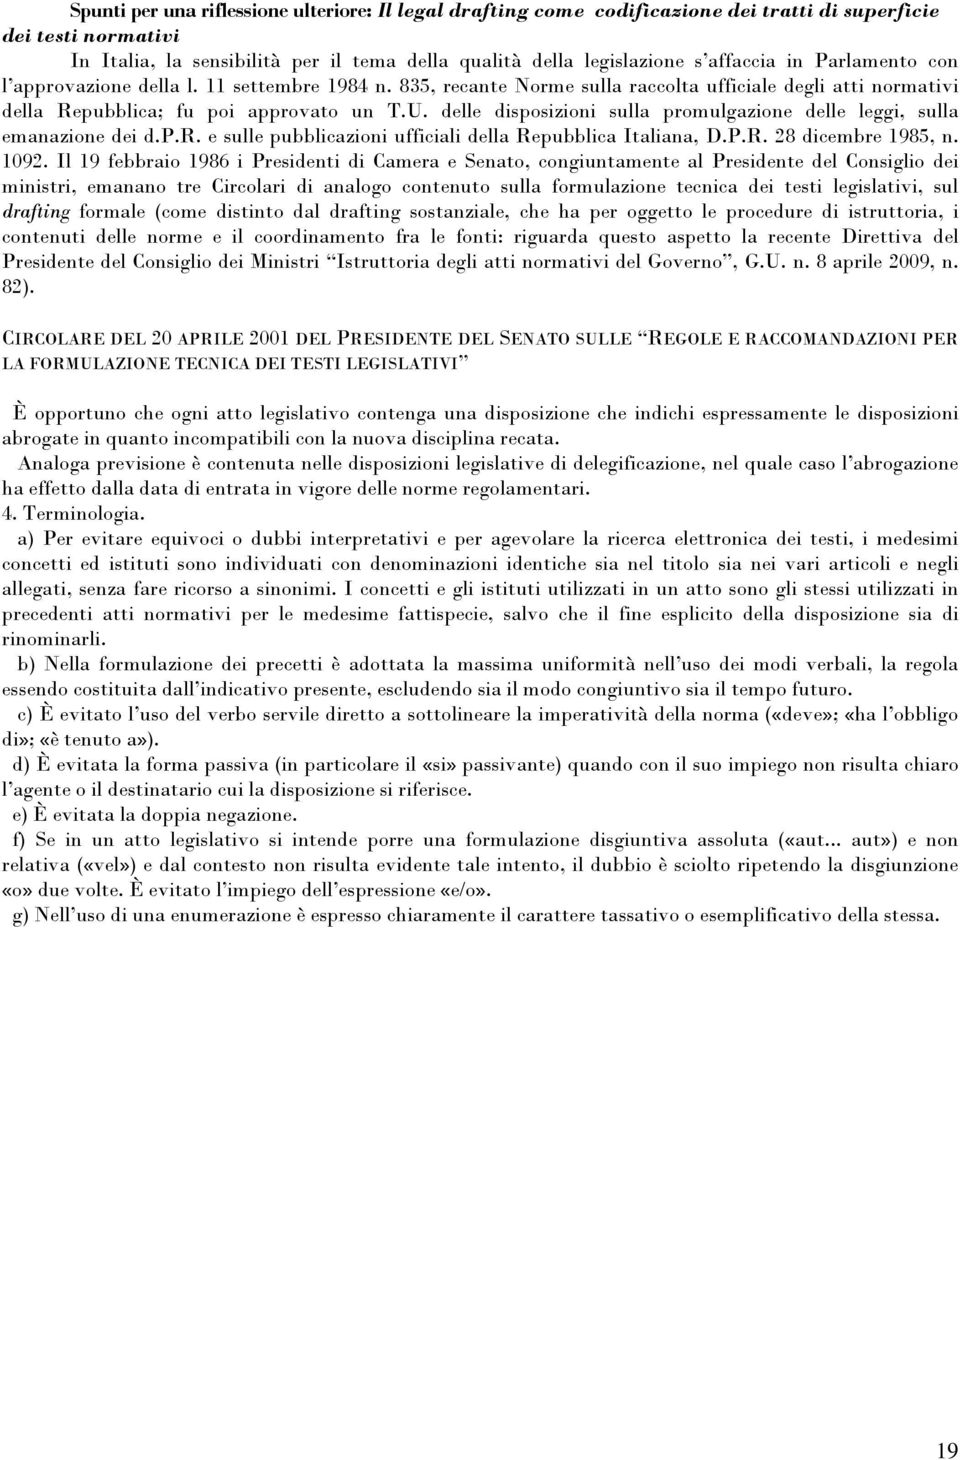 delle disposizioni sulla promulgazione delle leggi, sulla emanazione dei d.p.r. e sulle pubblicazioni ufficiali della Repubblica Italiana, D.P.R. 28 dicembre 1985, n. 1092.